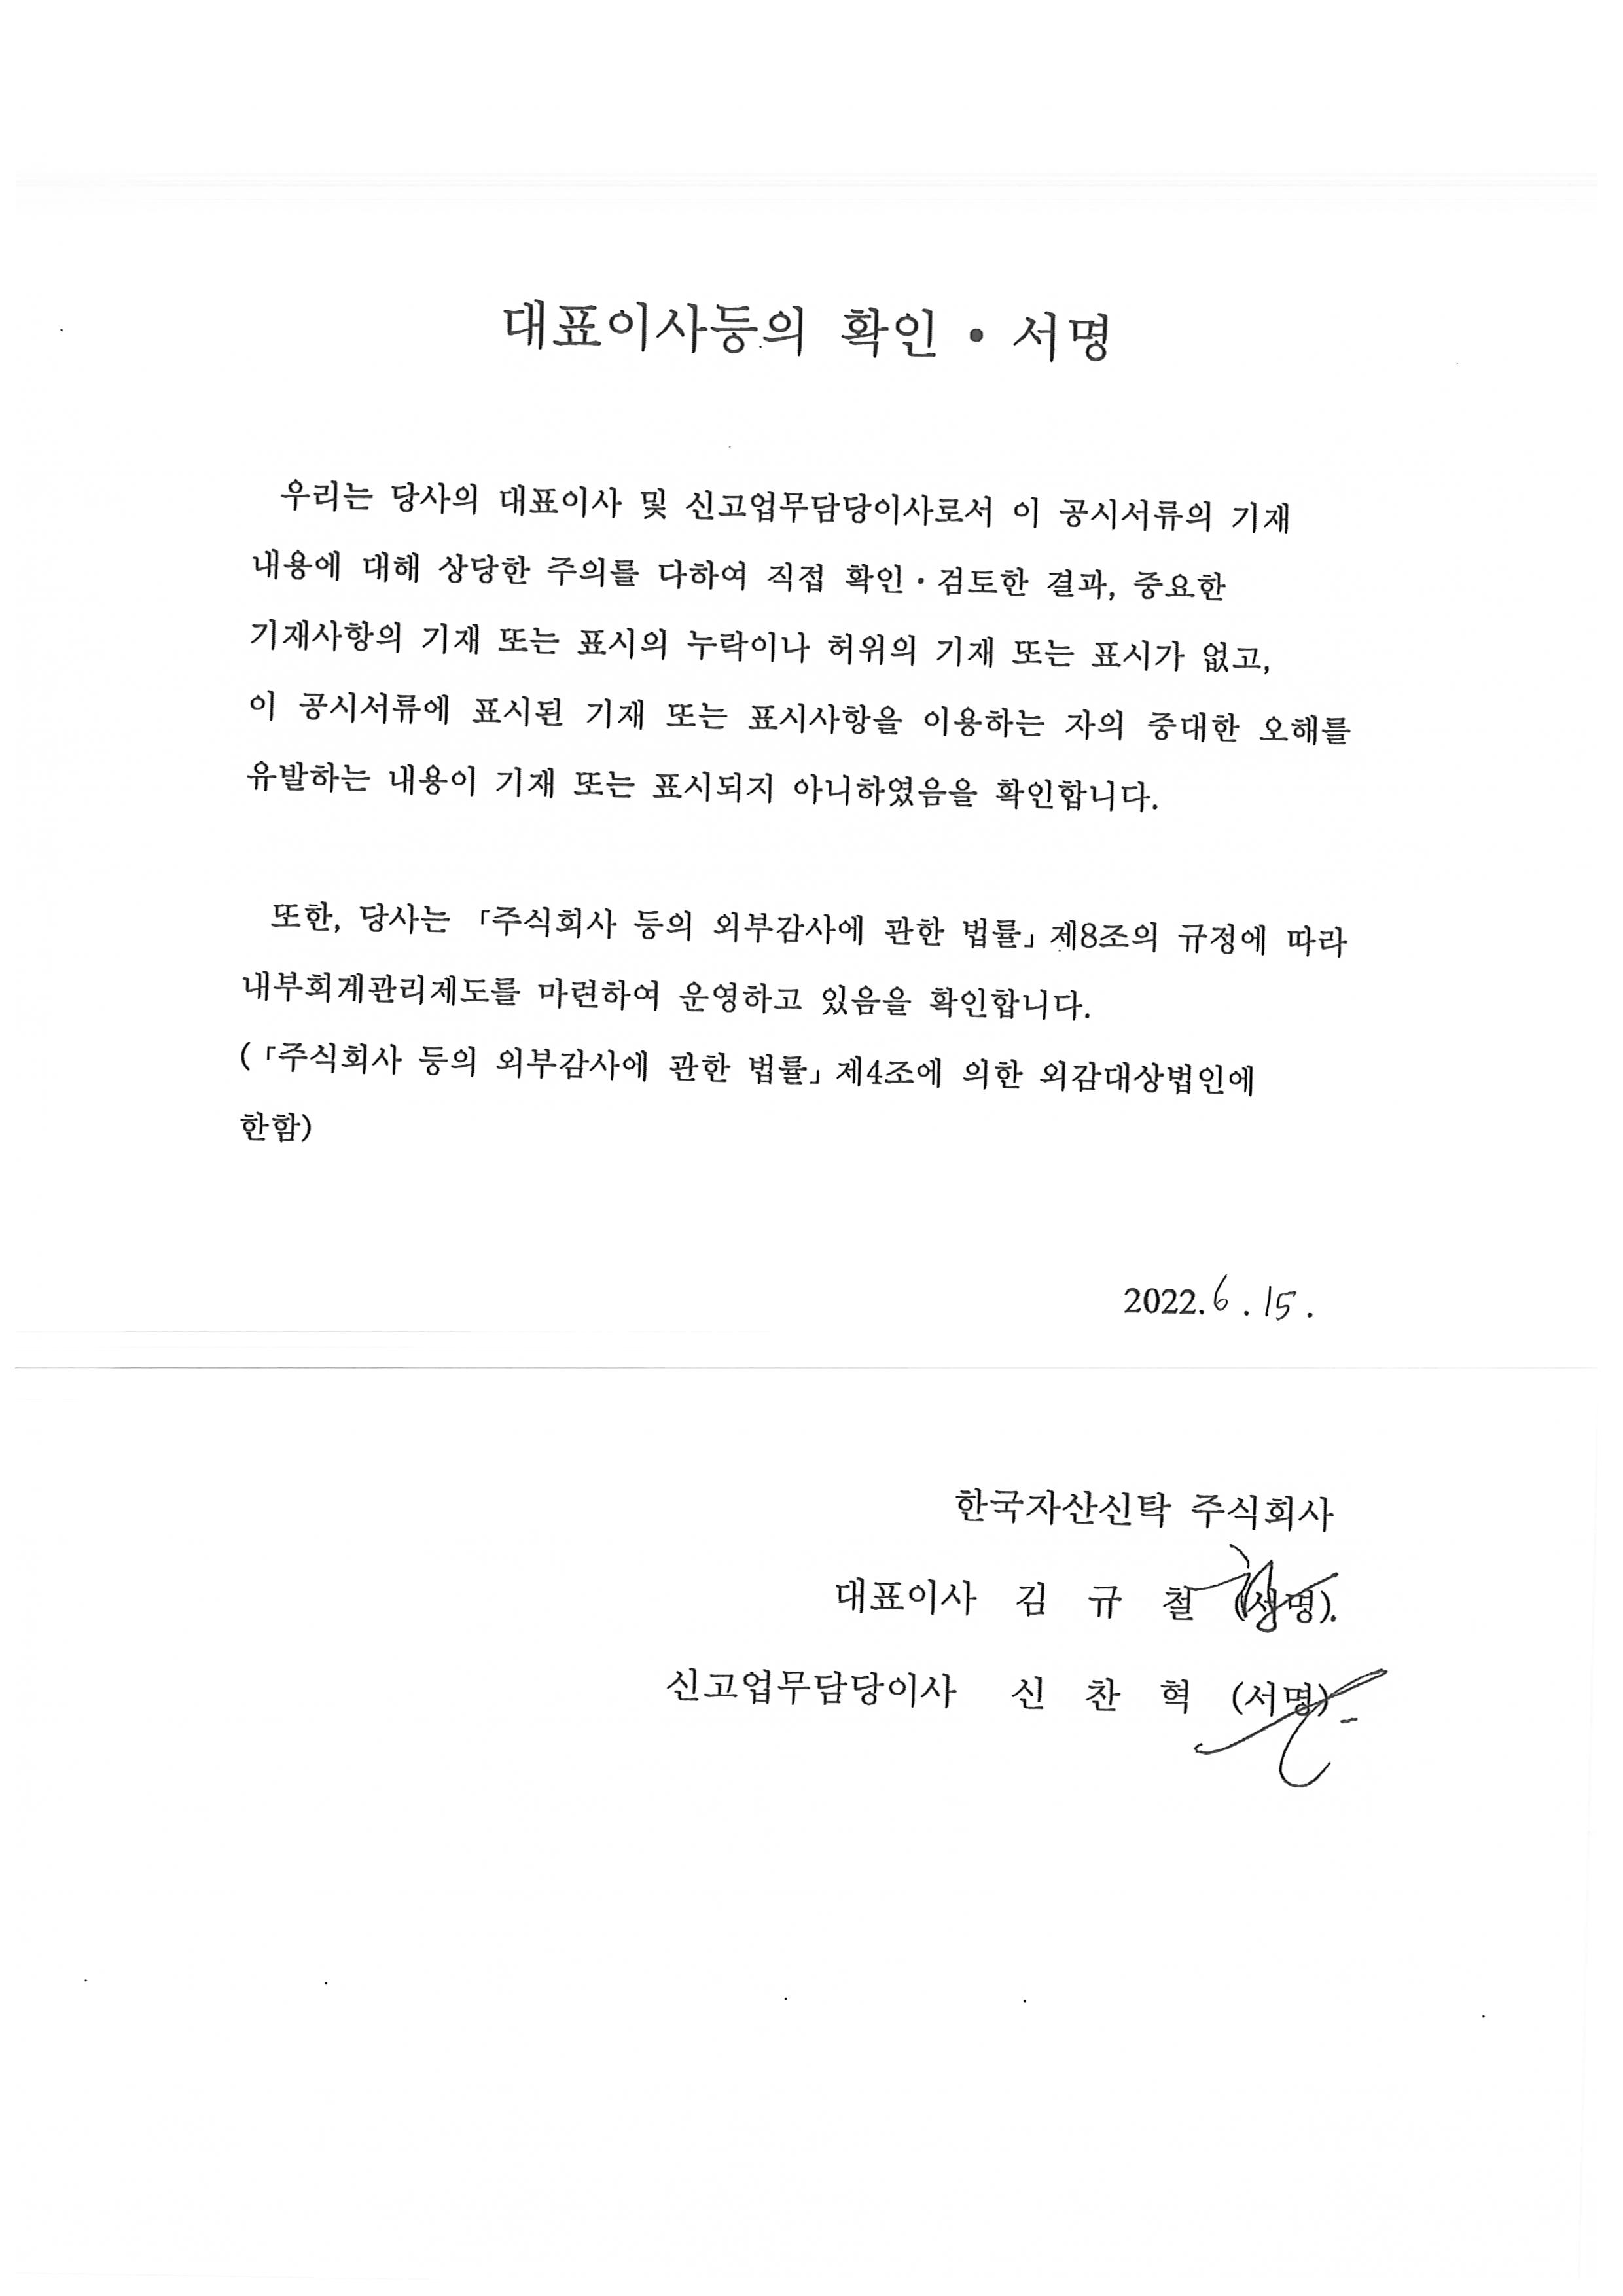 한국자산신탁] [정정]증권신고서(채무증권)